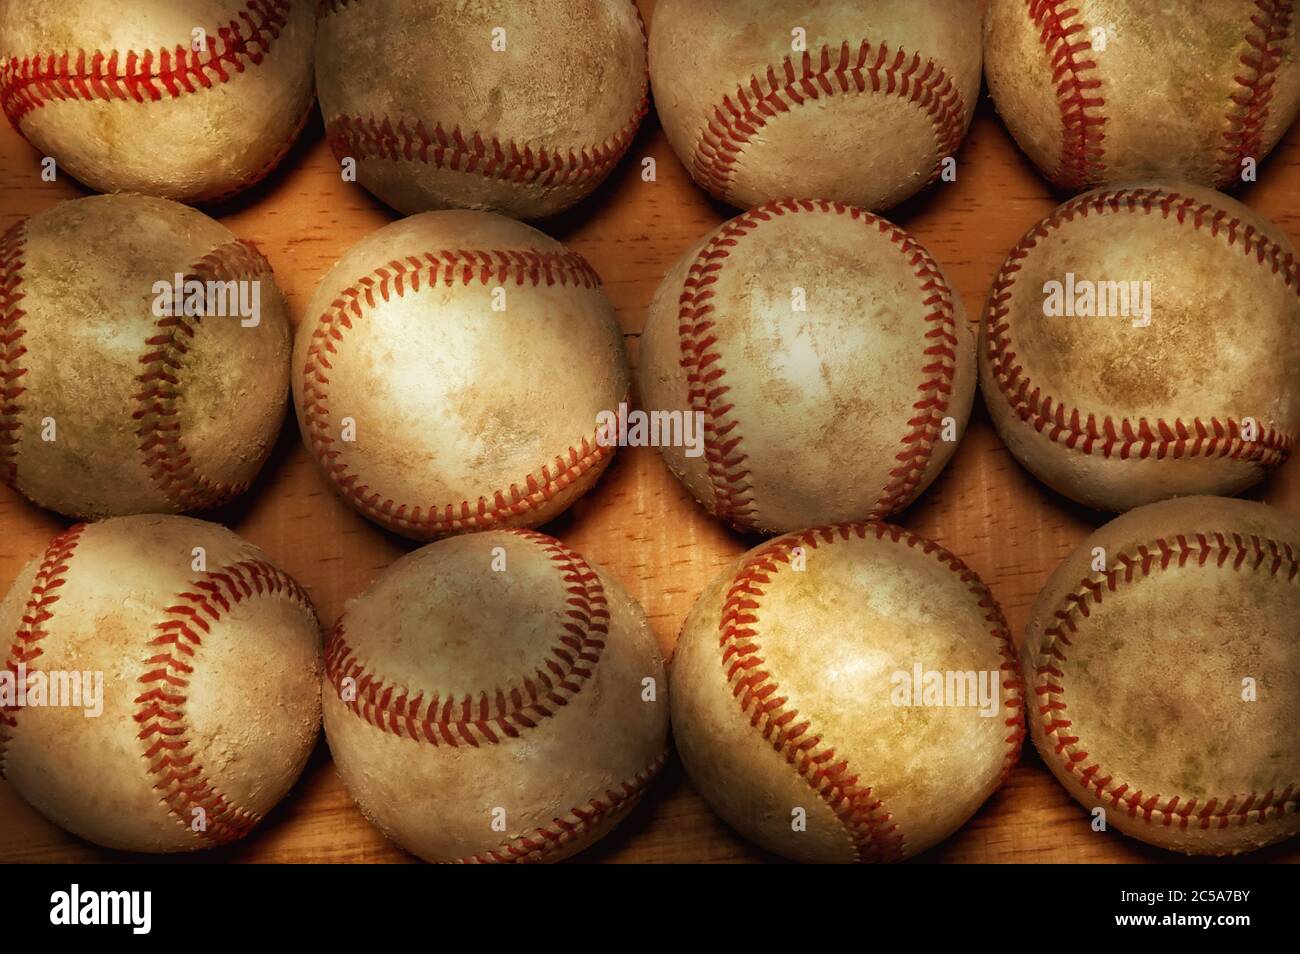 Flach Lay Baseball Stillleben. Ein hoch anwinkeliger Schuss von einem Dutzend gebrauchten Baseballs auf einer Holzoberfläche mit warmem Seitenlicht. Stockfoto